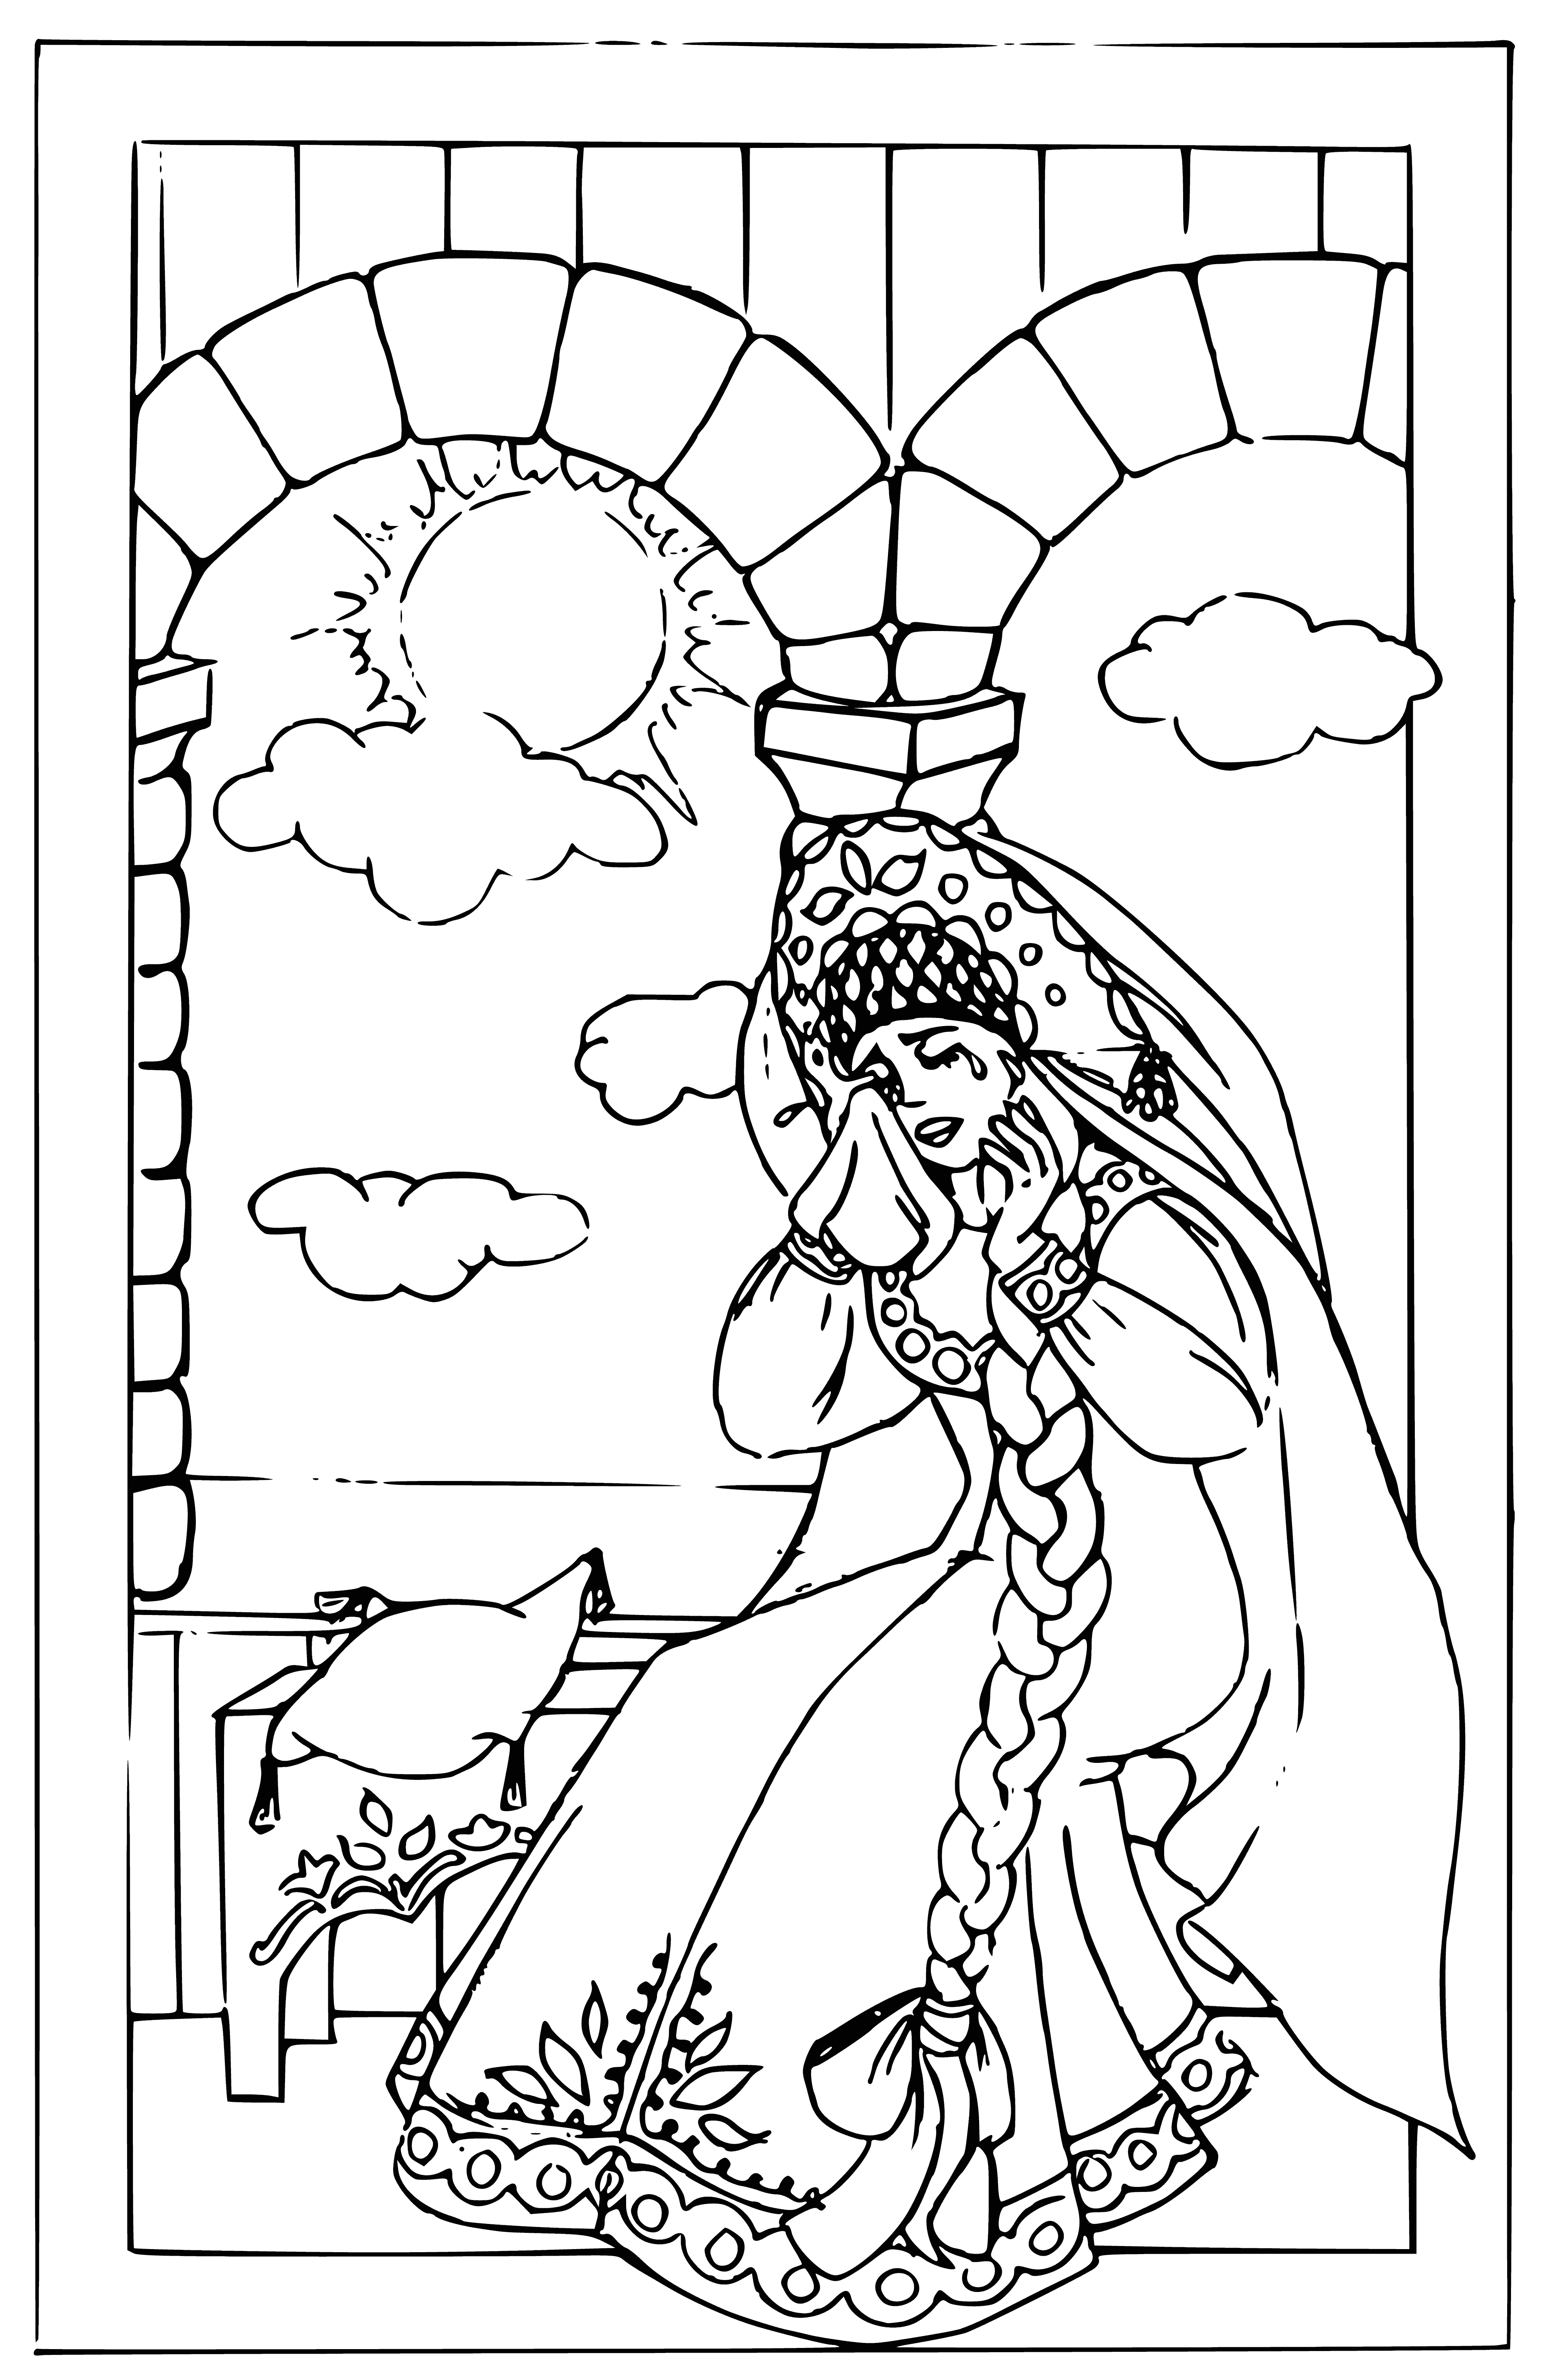 Prenses Nesmeyana boyama sayfası